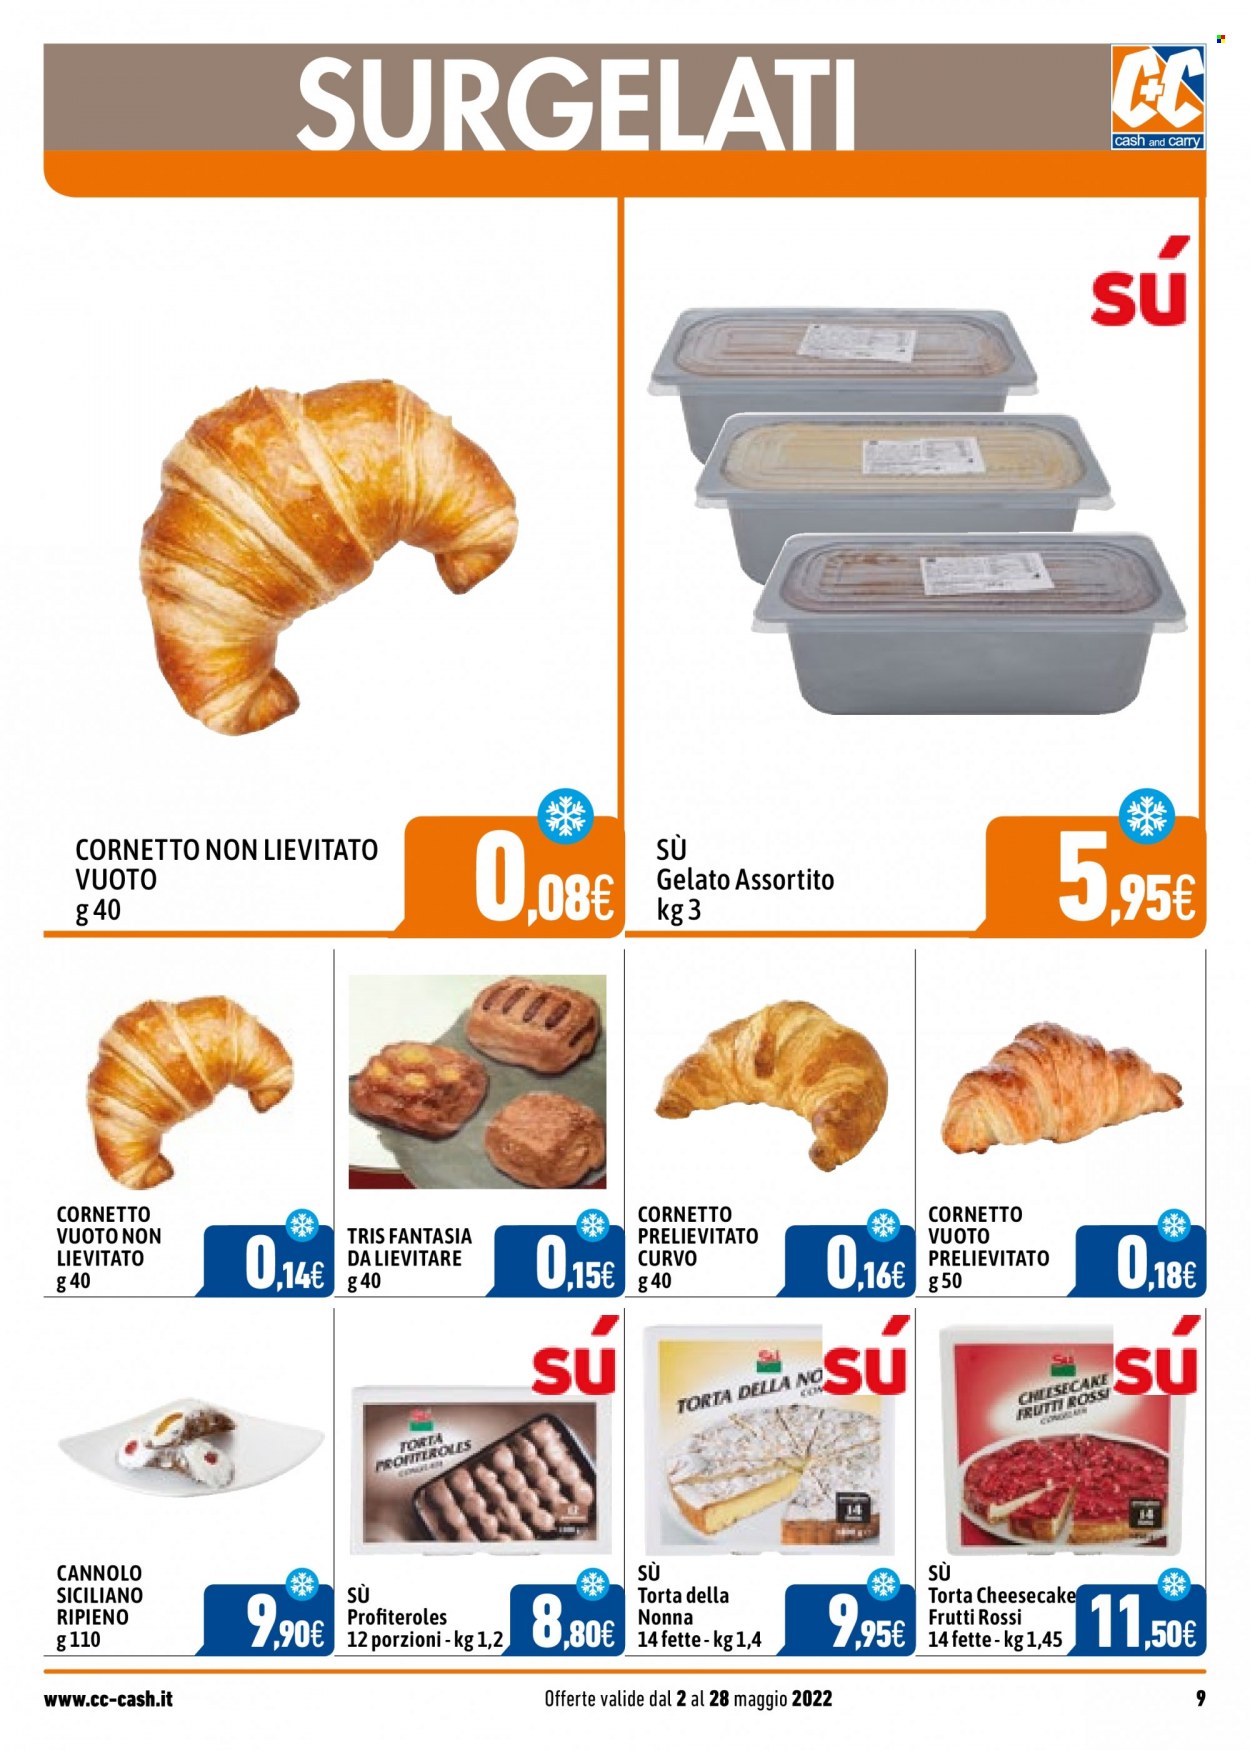 thumbnail - Volantino C+C Cash & Carry - 2/5/2022 - 28/5/2022 - Prodotti in offerta - croissant, torta, profiteroles, Cornetto, cannoli, torta della nonna, gelato. Pagina 9.